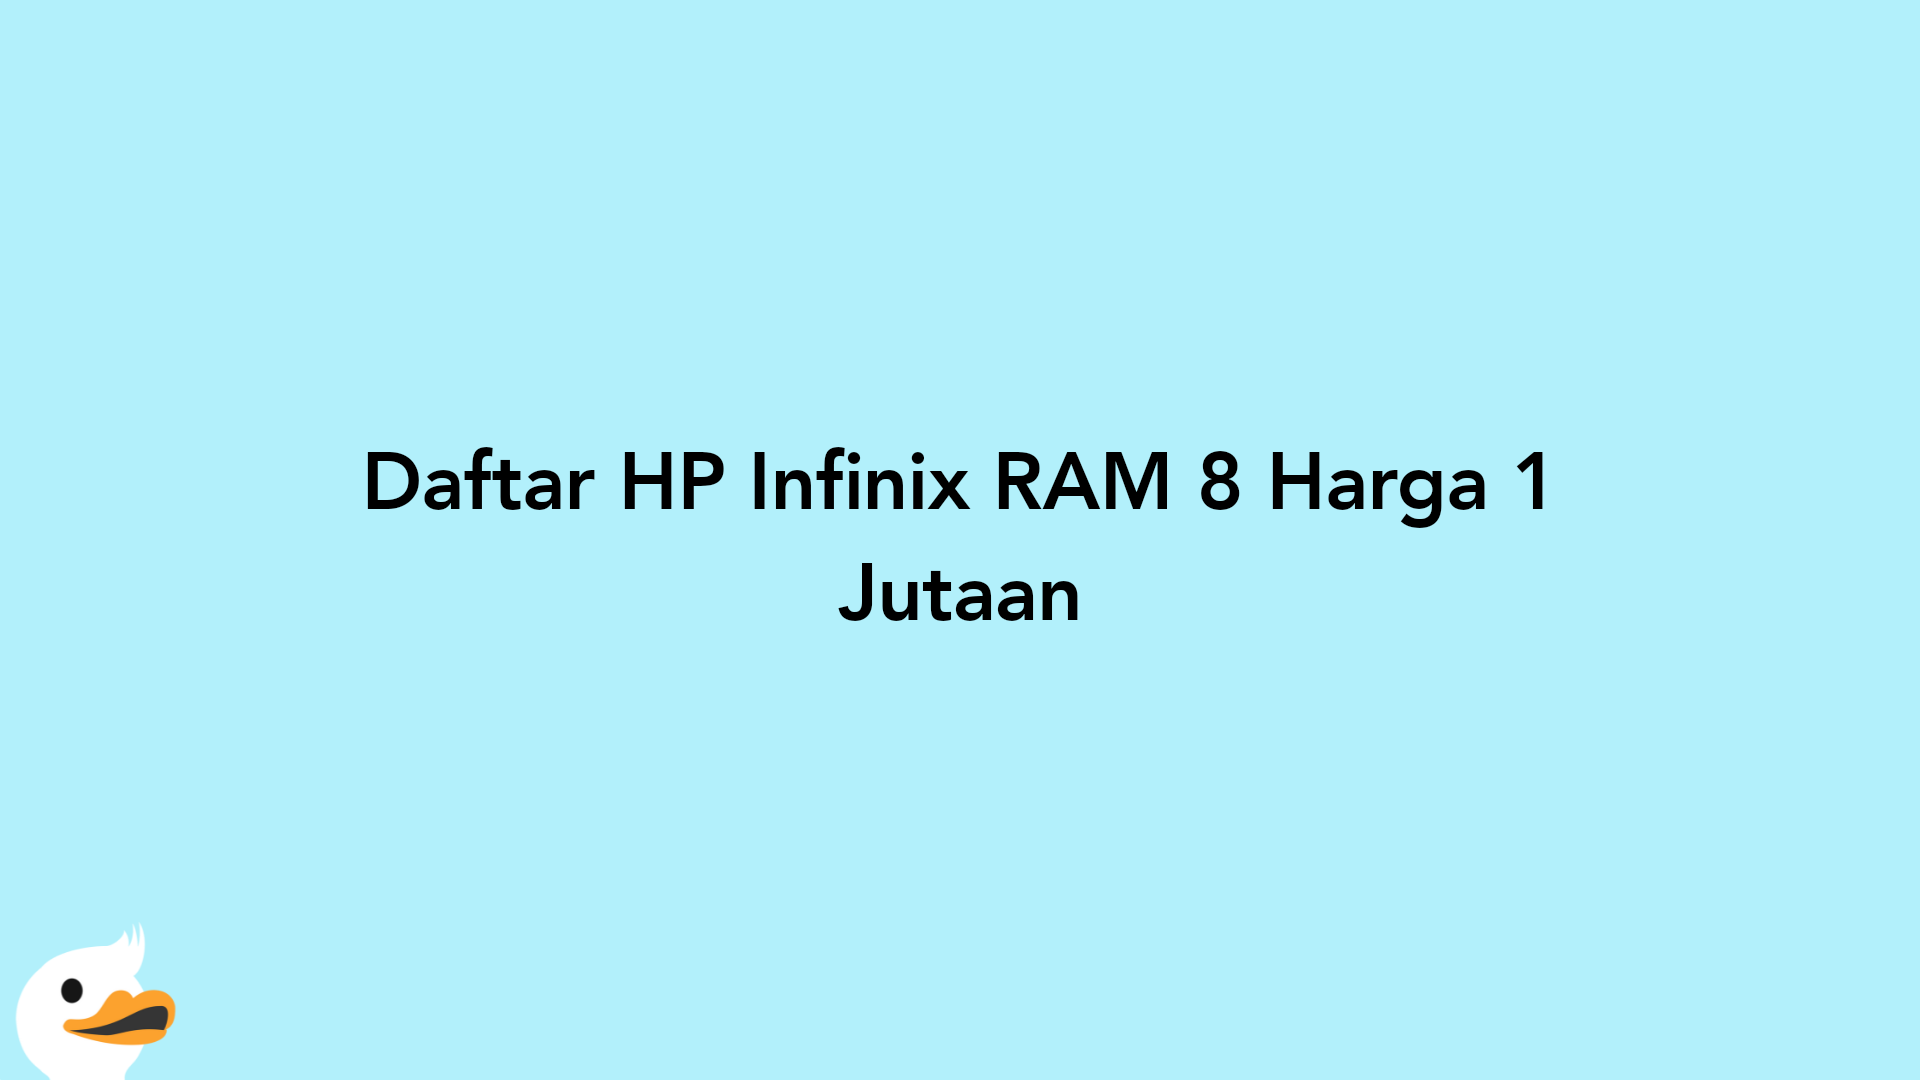 Daftar HP Infinix RAM 8 Harga 1 Jutaan